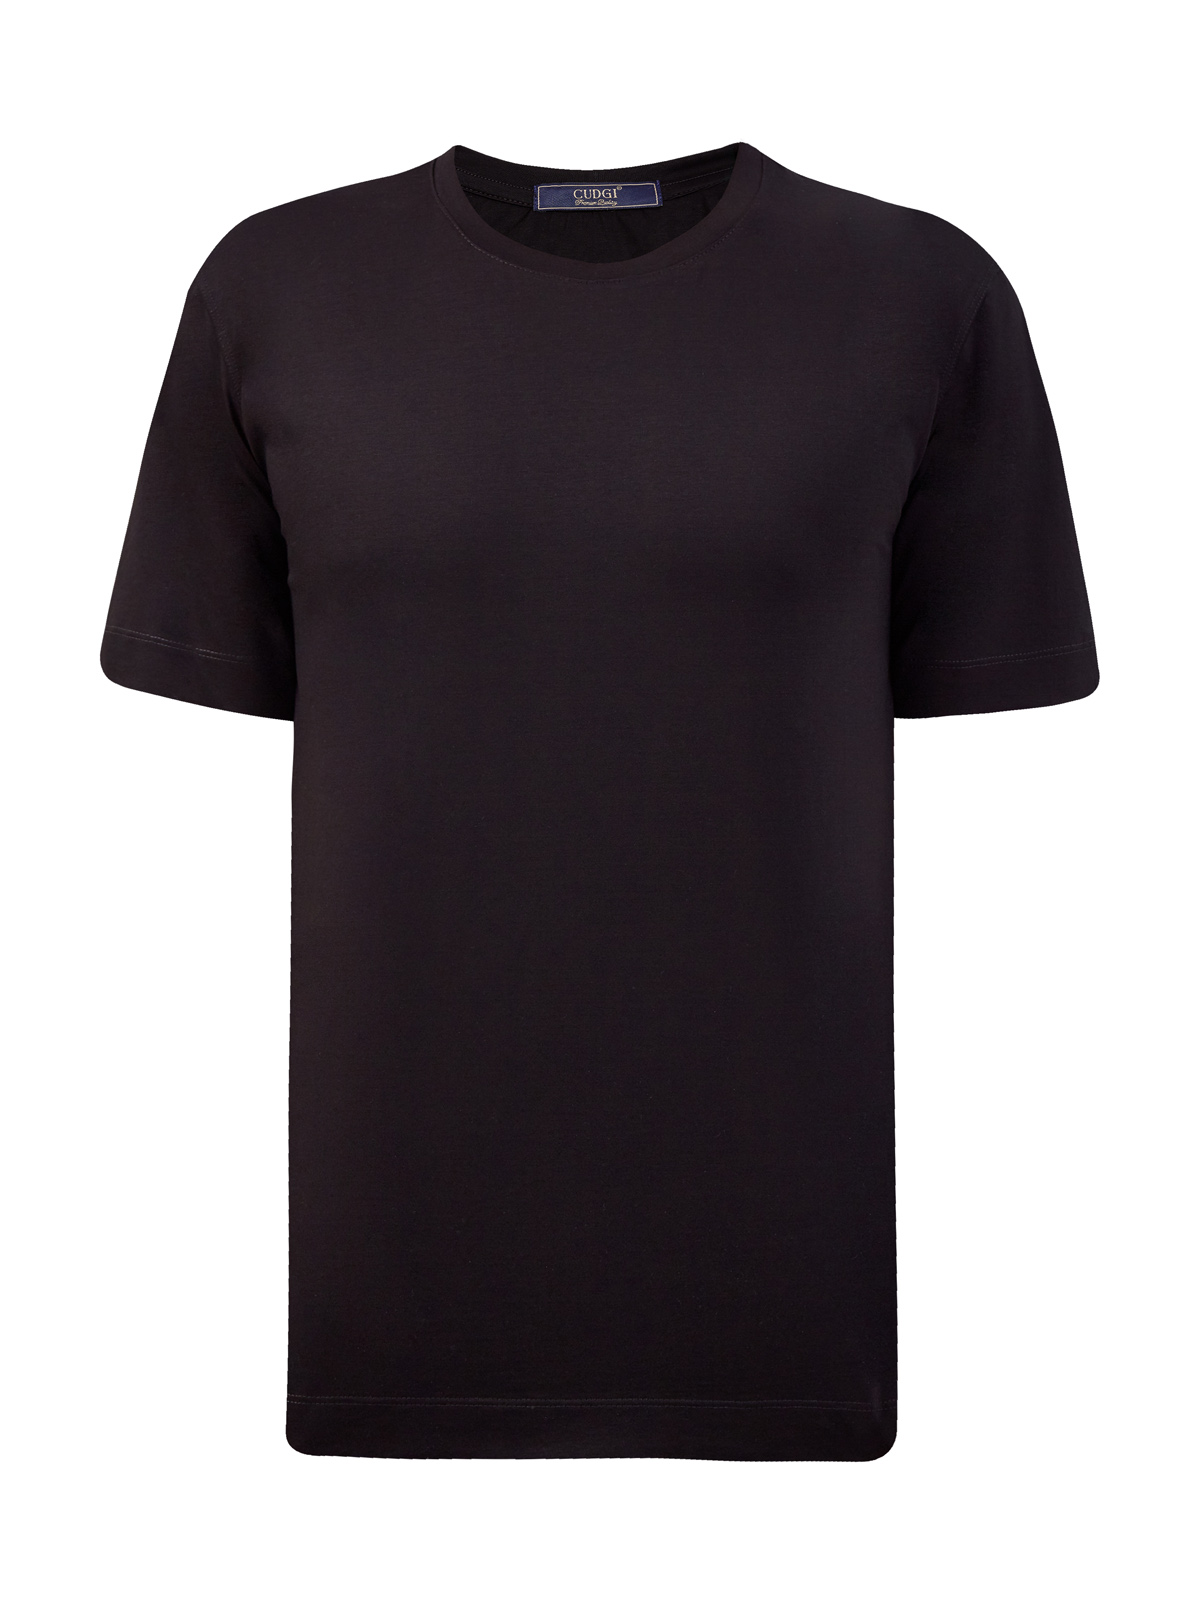 Однотонная футболка из гладкого хлопка джерси CUDGI, цвет черный, размер 50;54;56 - фото 1